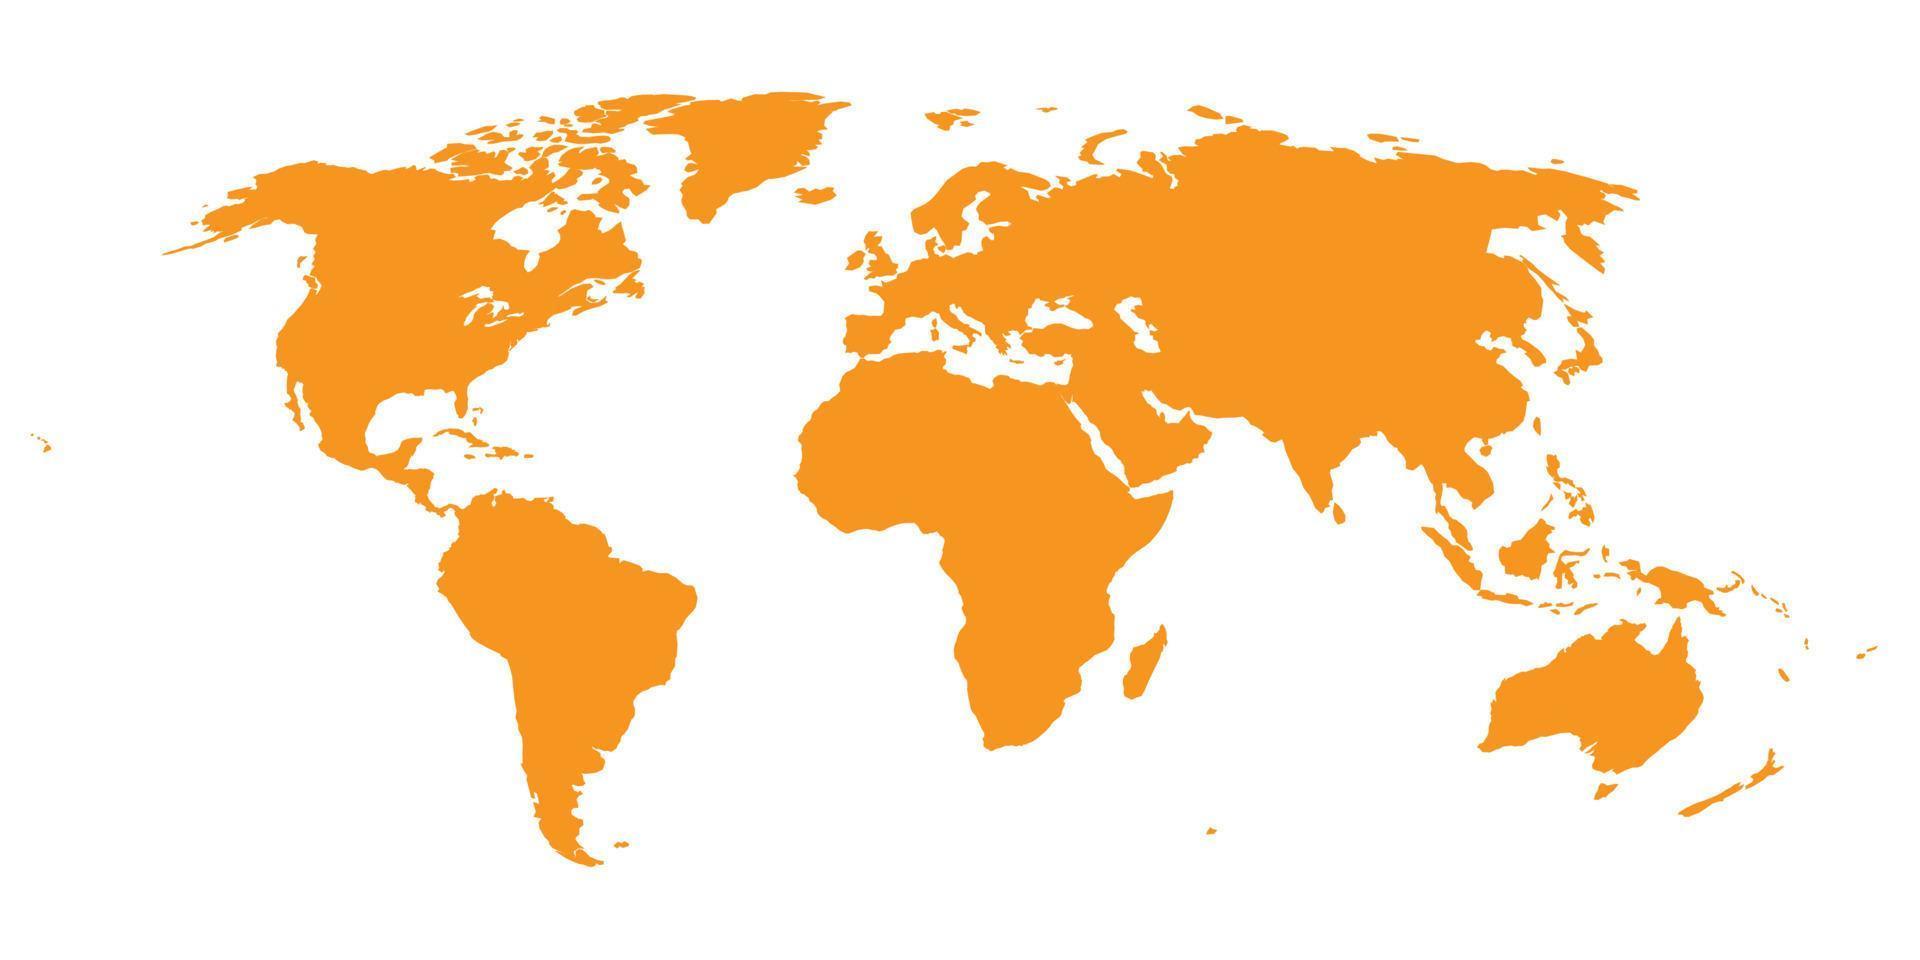 mappa del mondo su sfondo bianco. modello di mappa del mondo con continenti, nord e sud america, europa e asia, africa e australia vettore